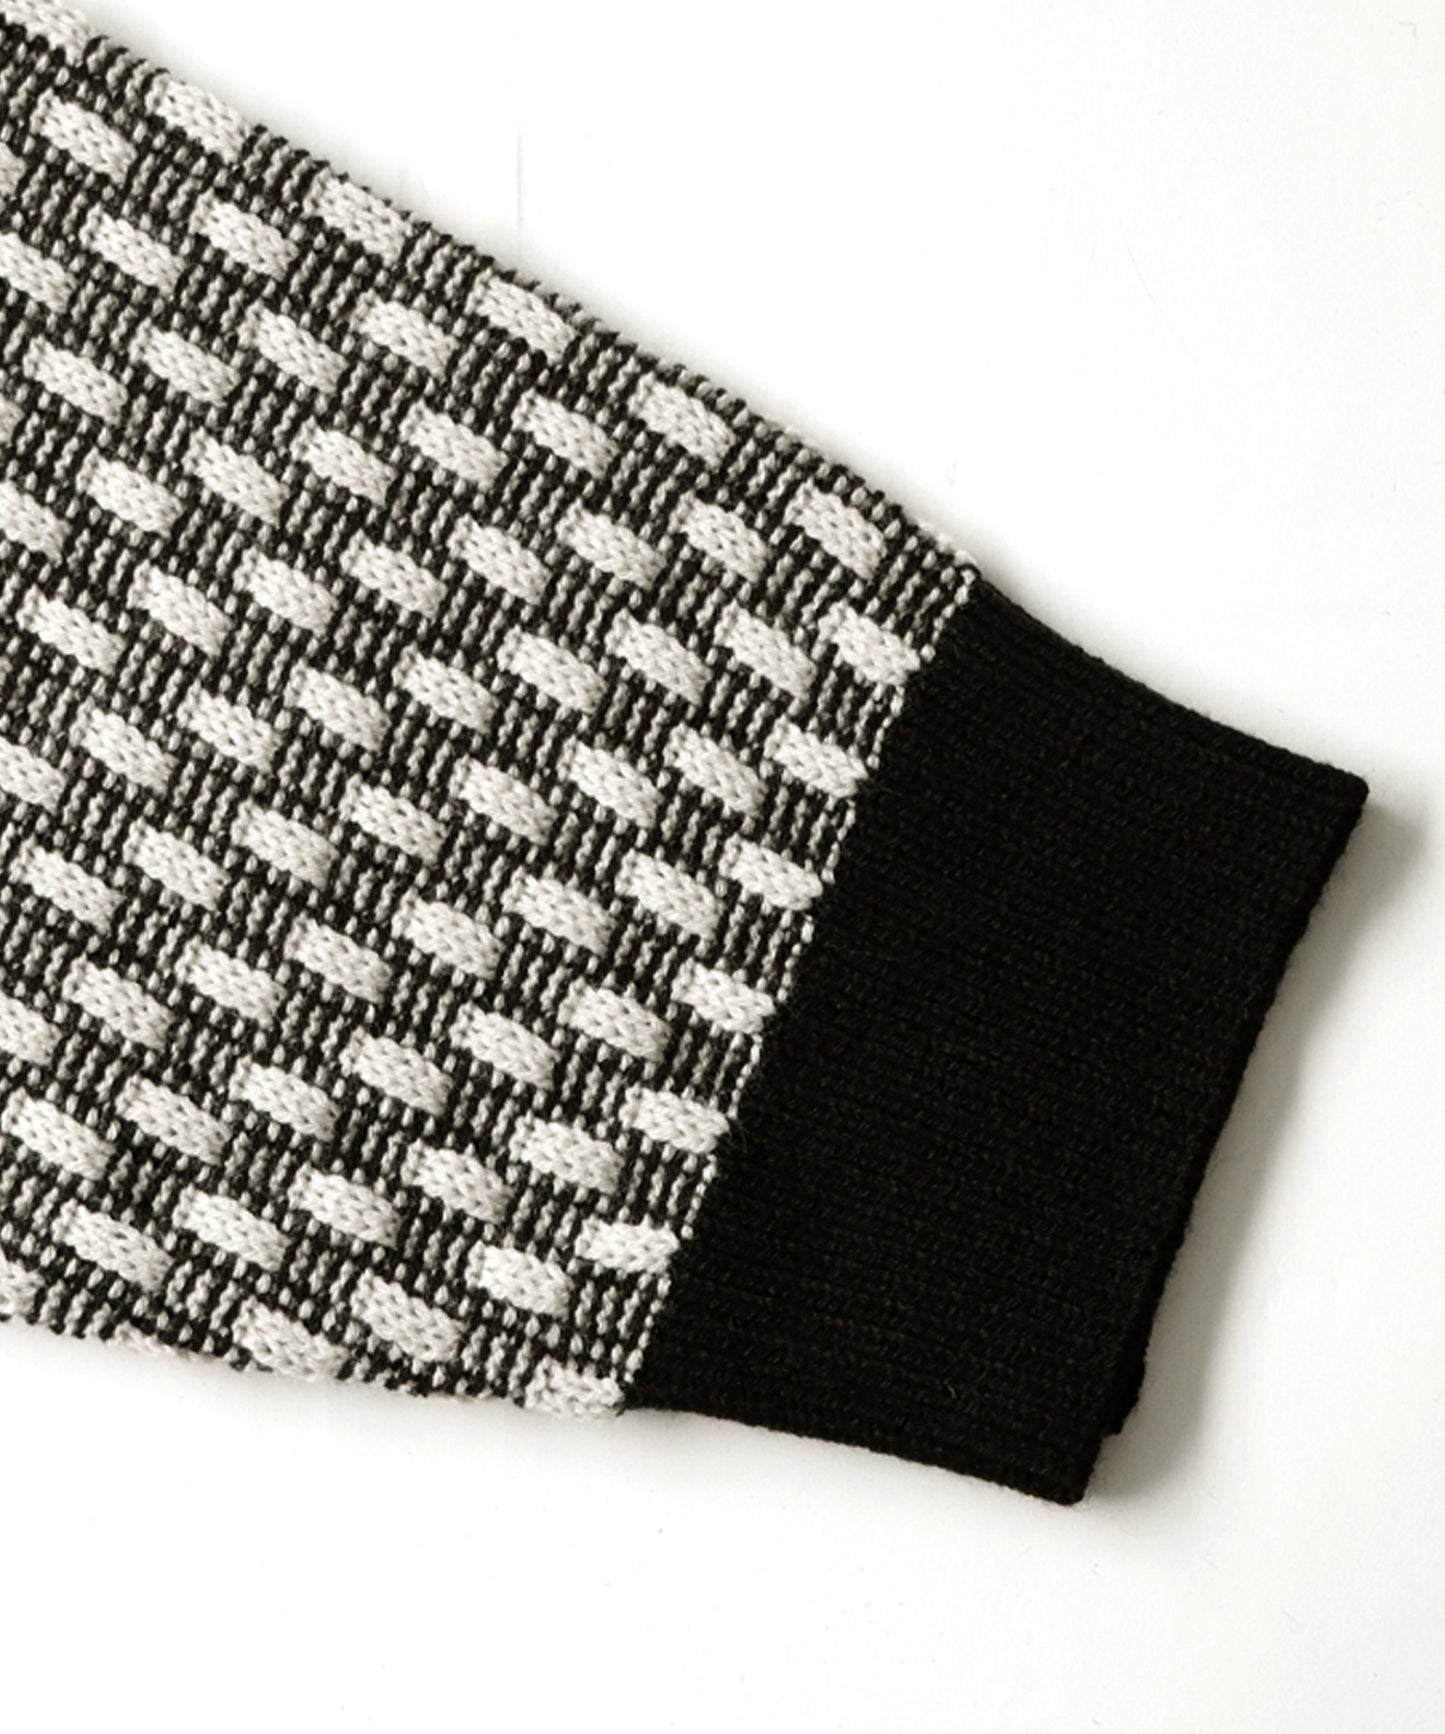 Geometric Jacquard Knit Men's